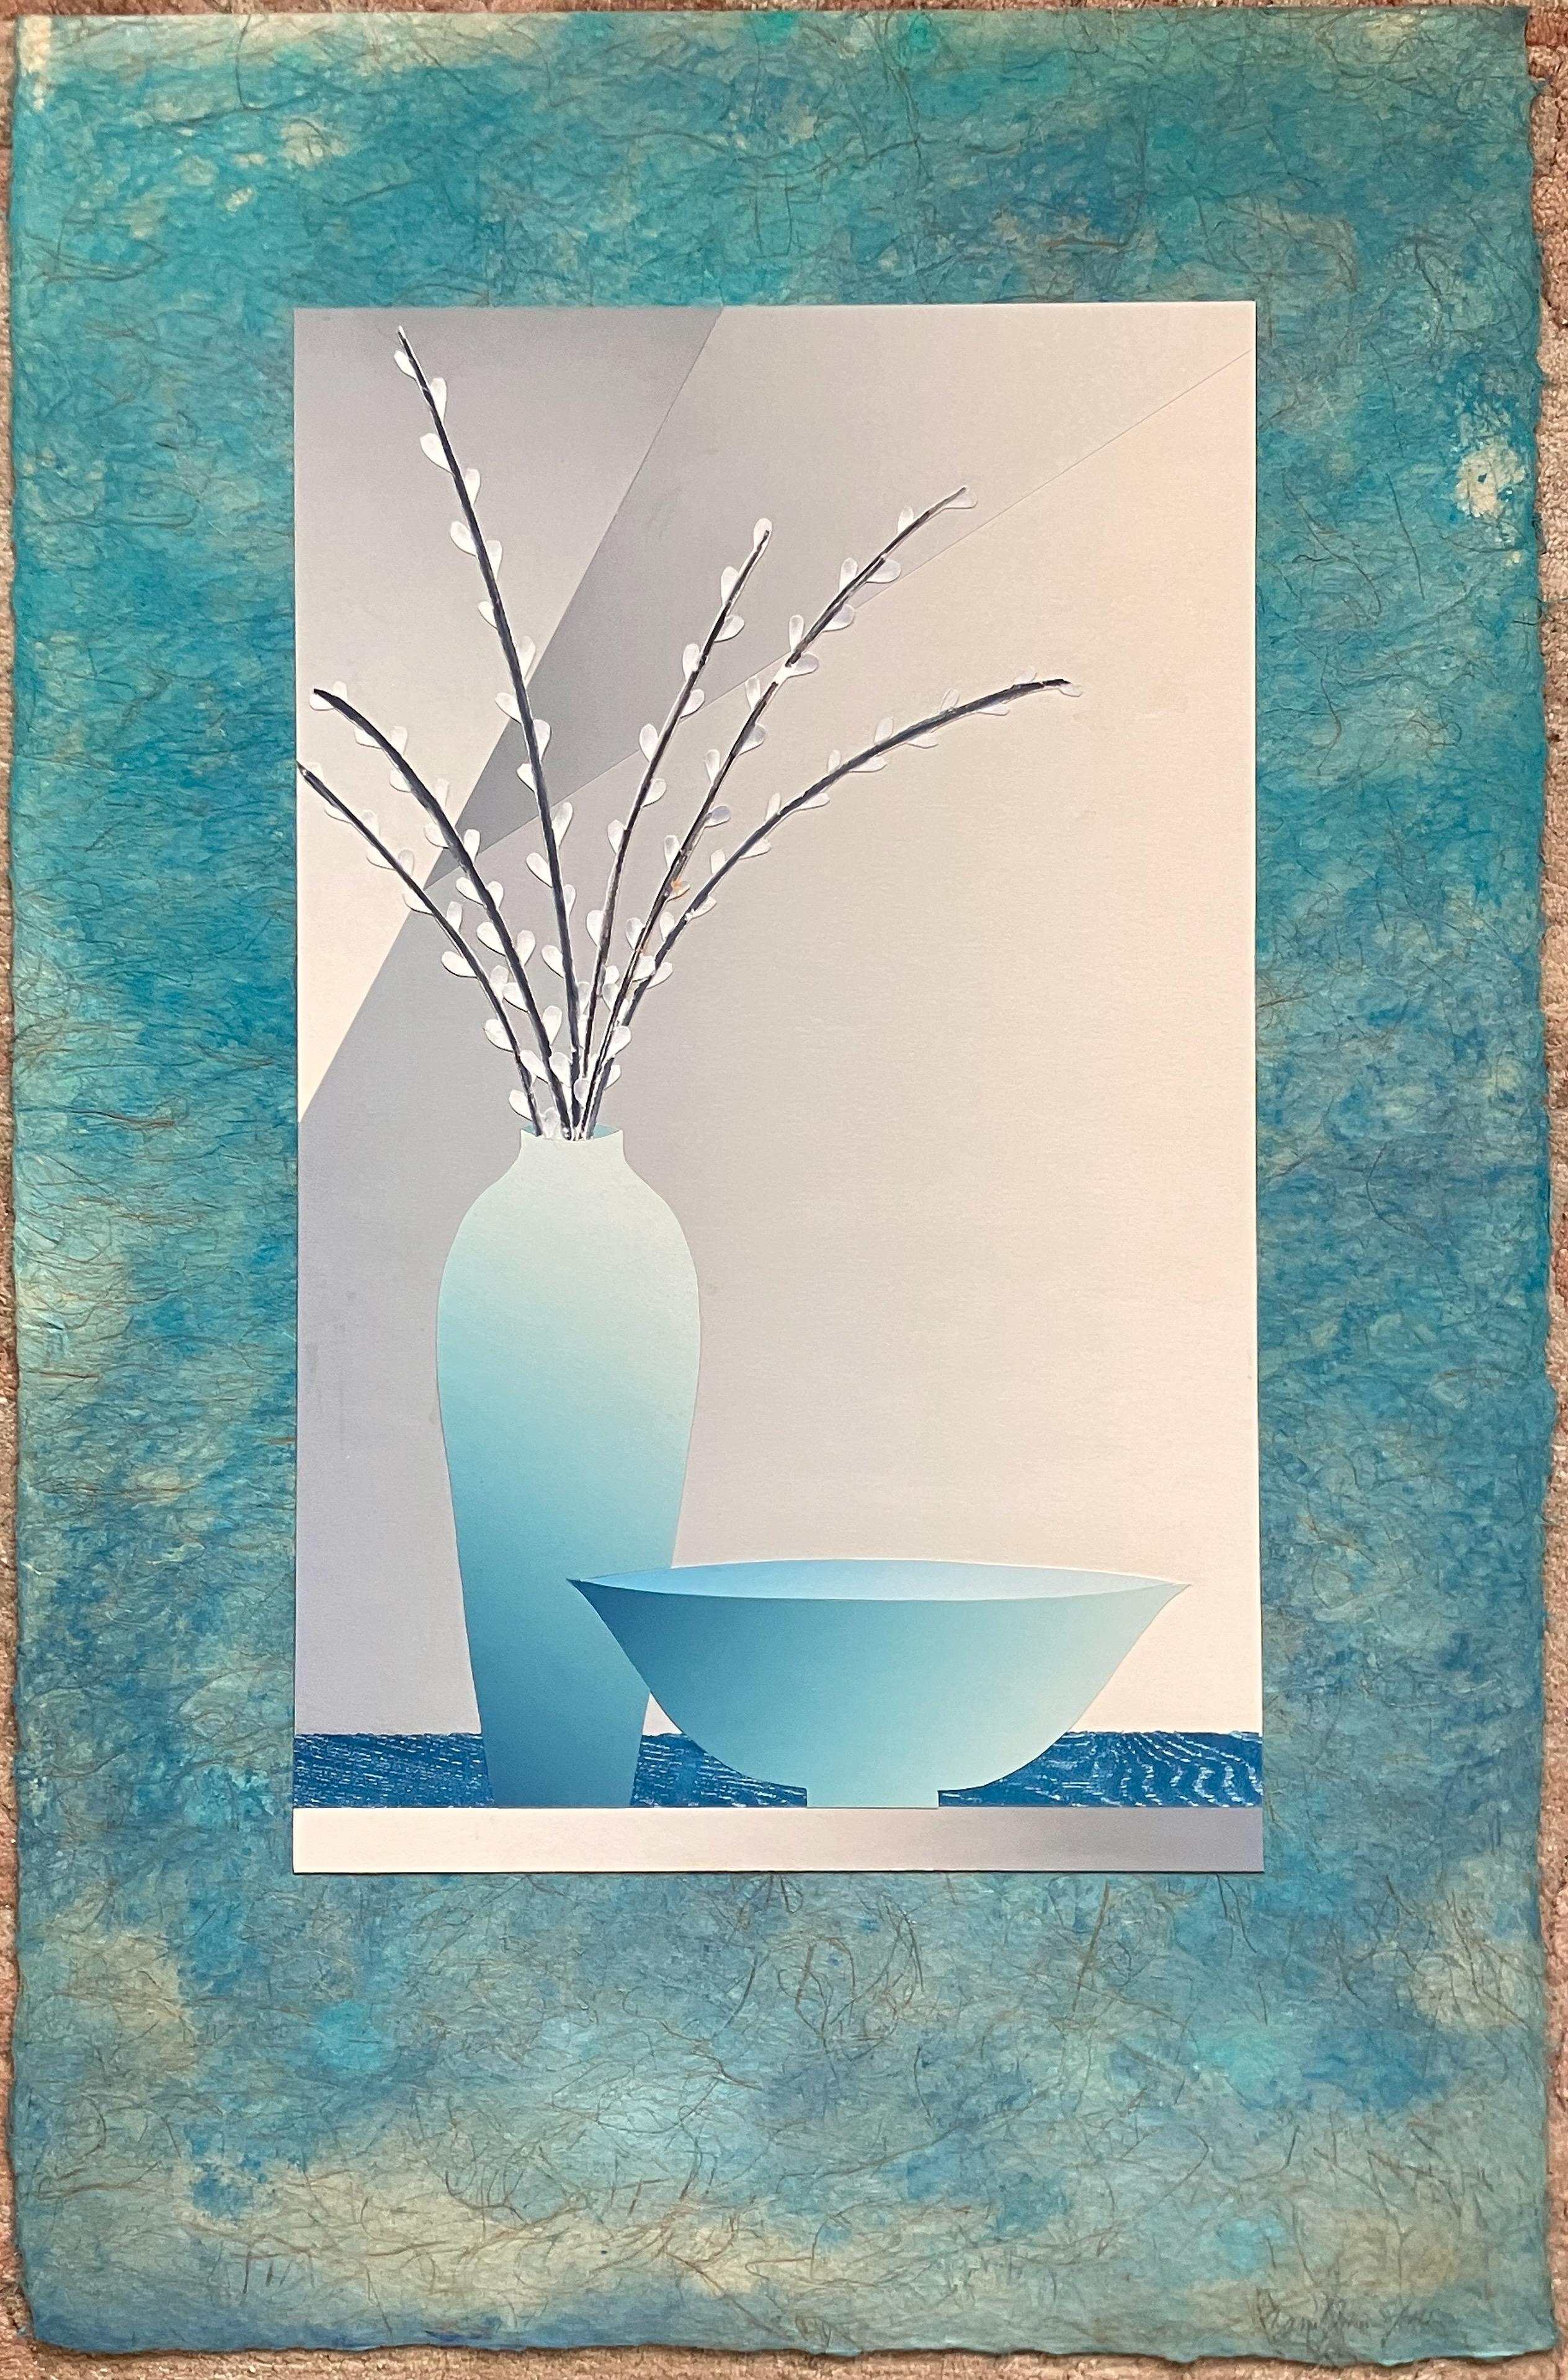 Weiden in Vase – Stillleben – Mixed Media Art von Daniel Joshua Goldstein